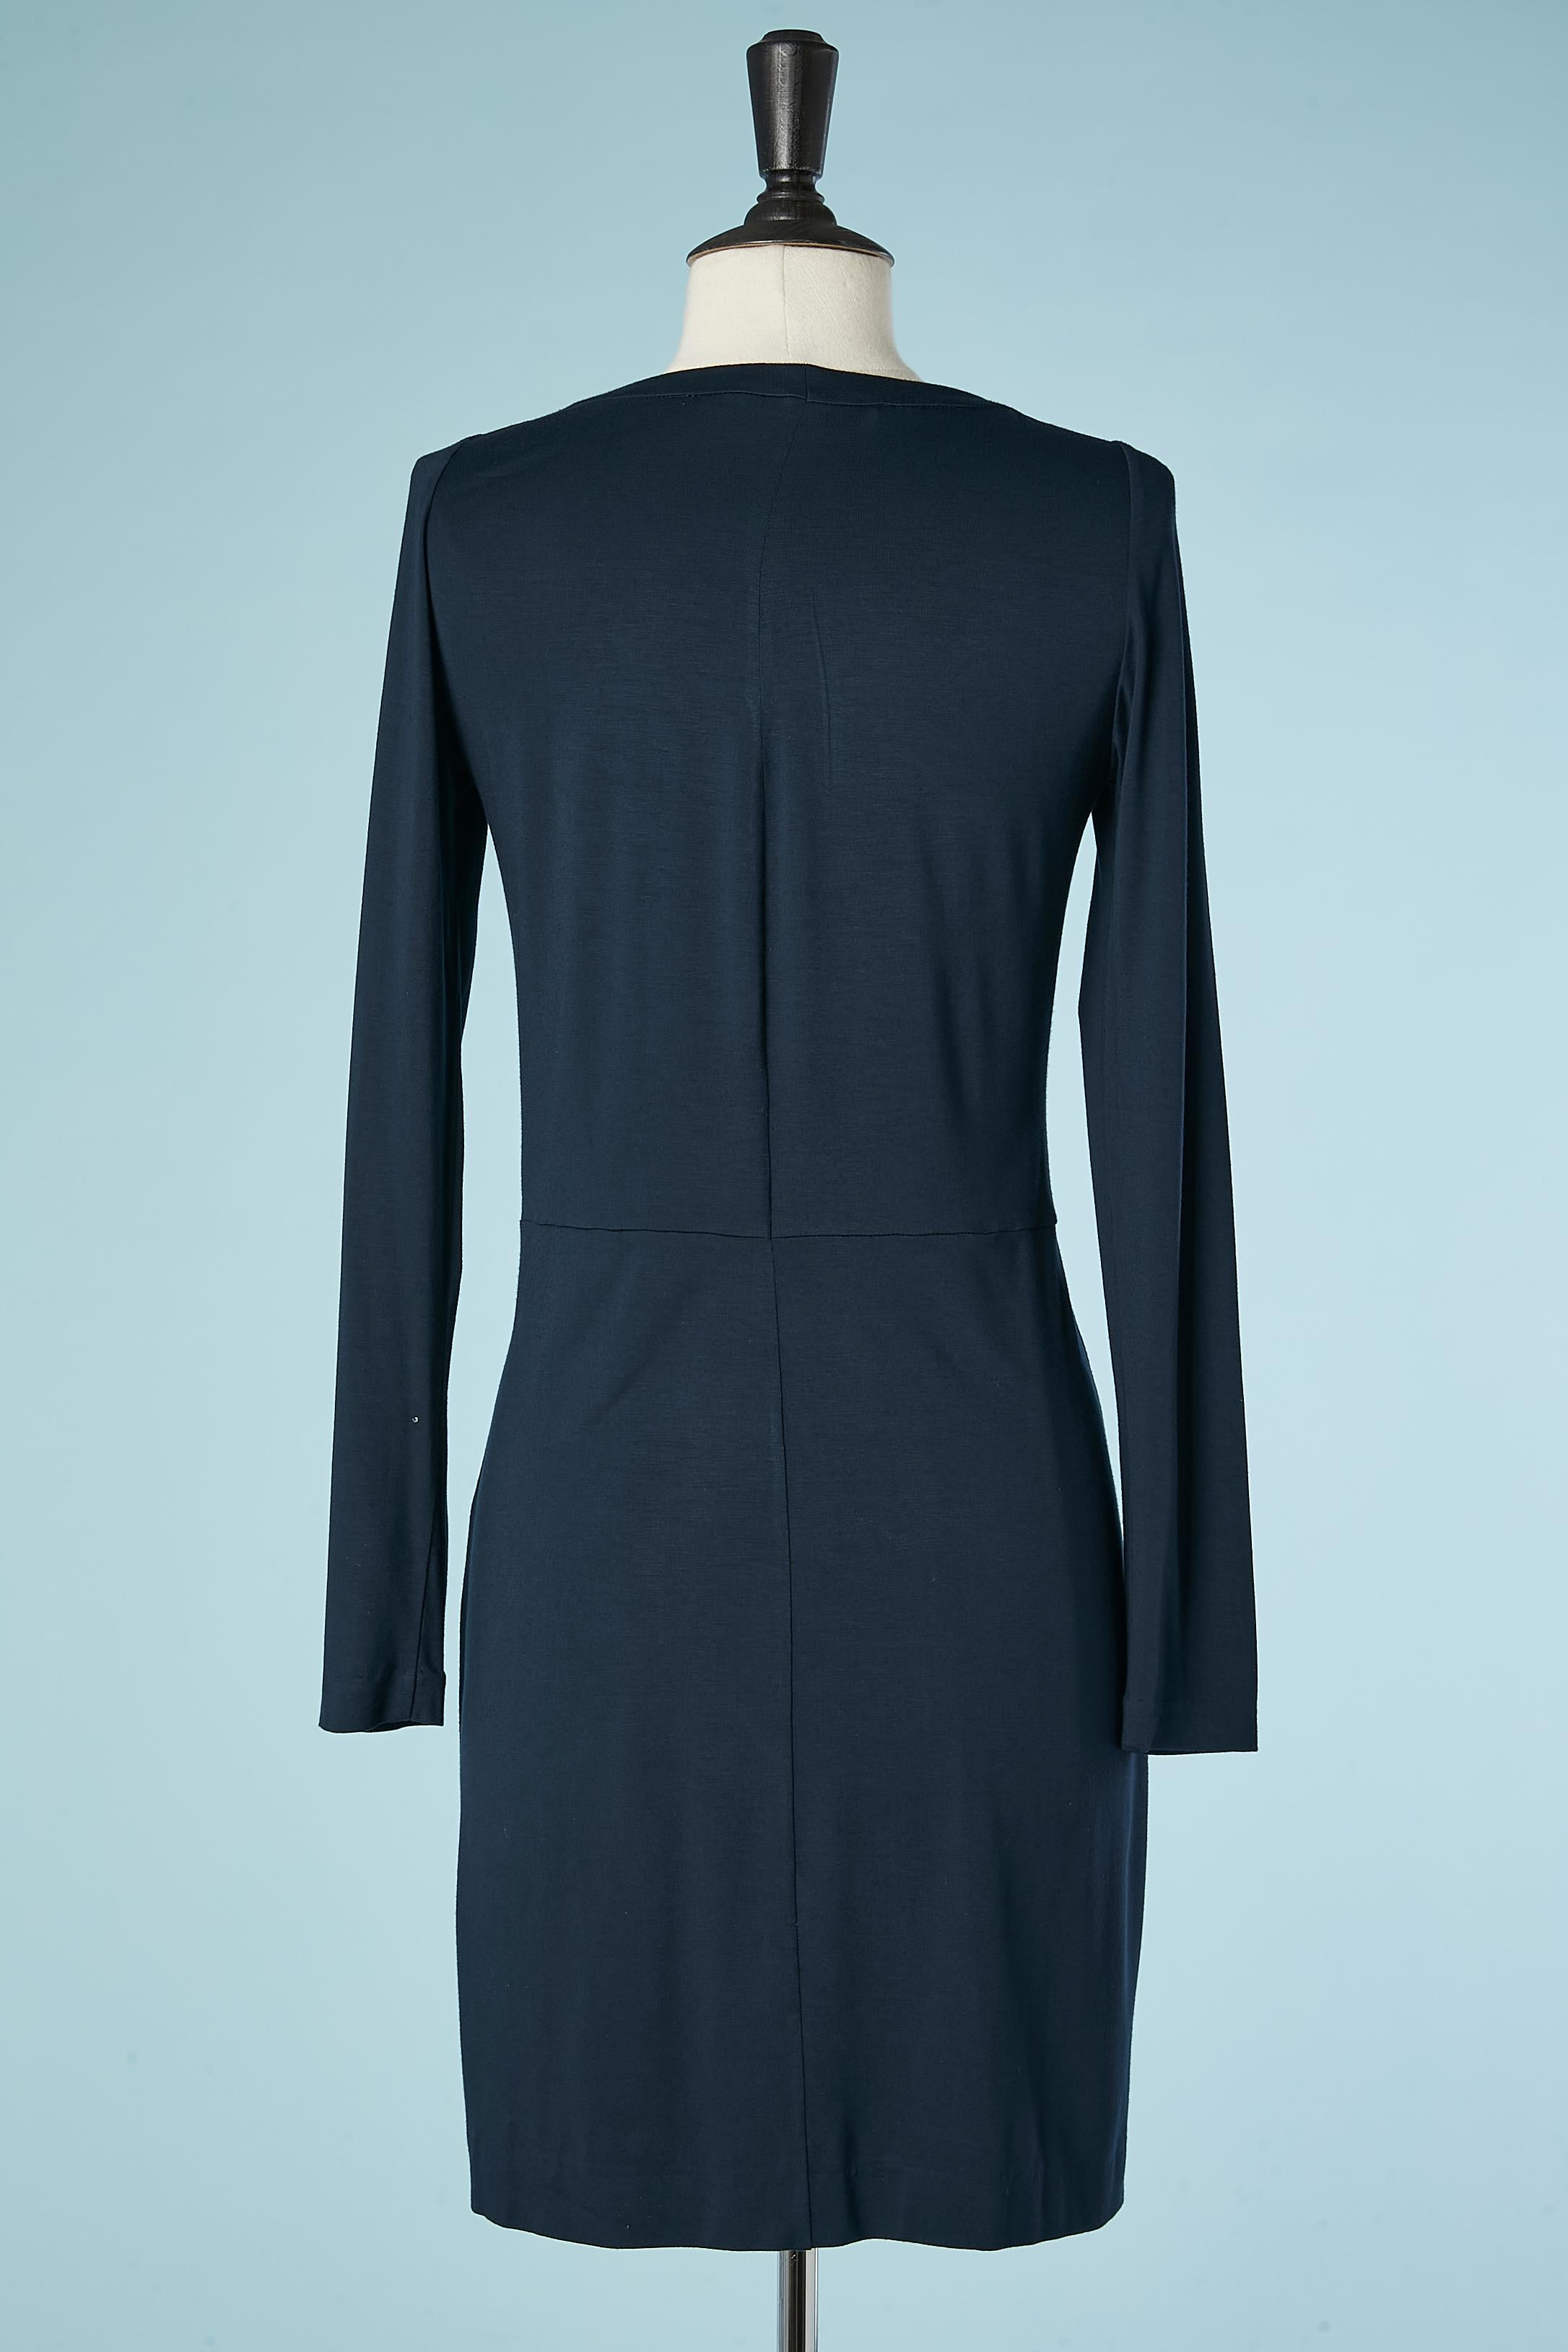 Navy blue cotton jersey dress draped in the front Diane Von Furstenberg  In Excellent Condition For Sale In Saint-Ouen-Sur-Seine, FR